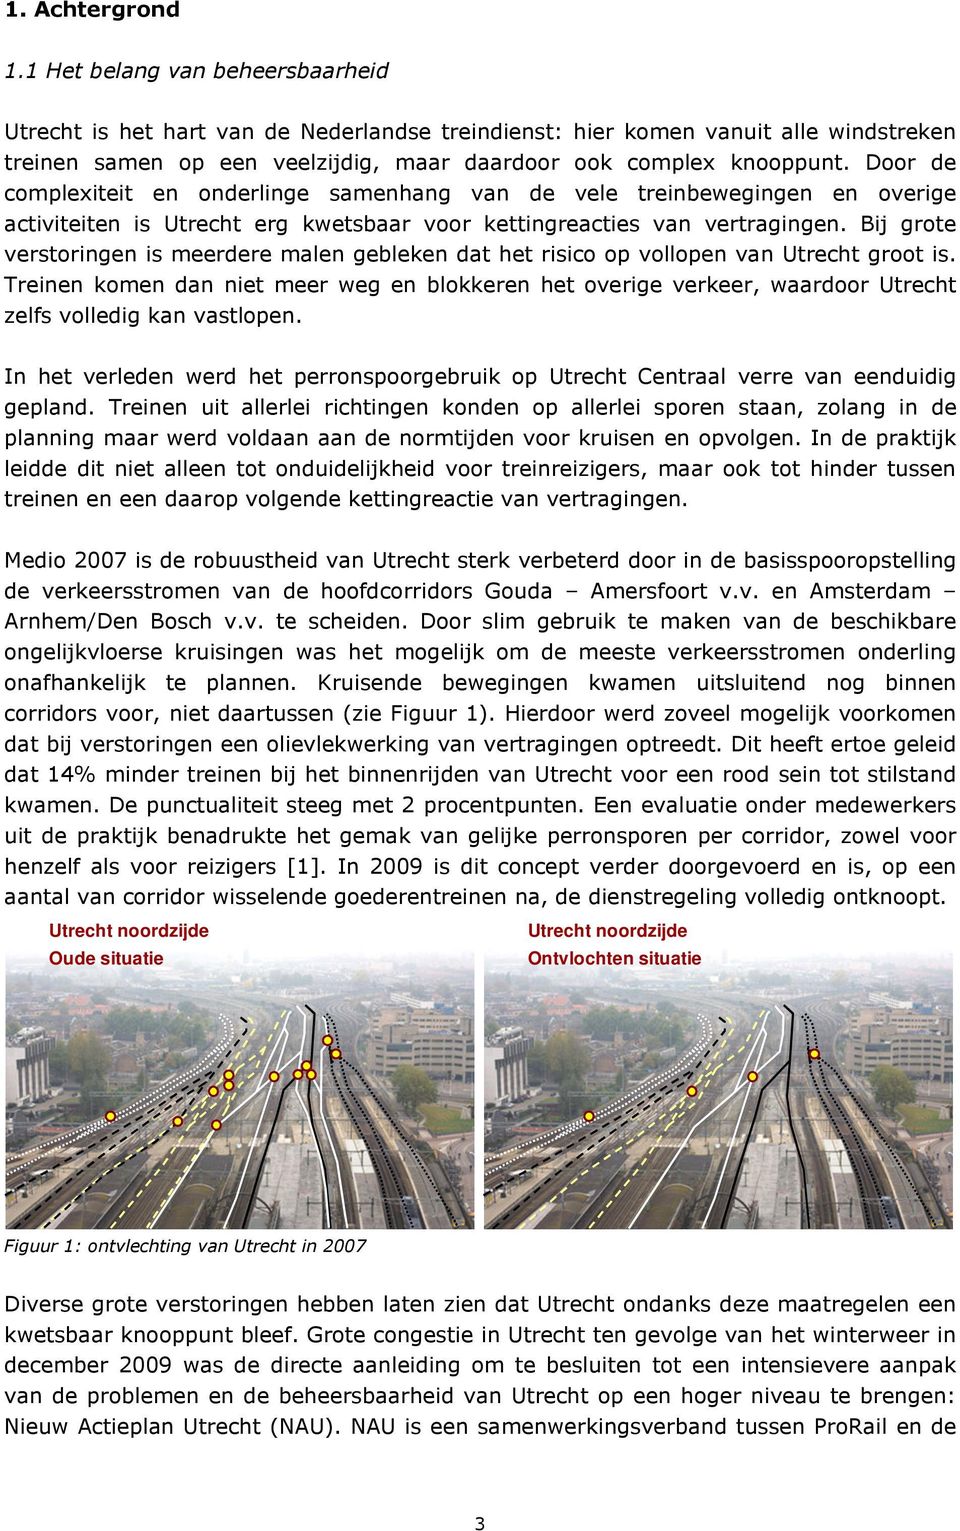 Door de complexiteit en onderlinge samenhang van de vele treinbewegingen en overige activiteiten is Utrecht erg kwetsbaar voor kettingreacties van vertragingen.